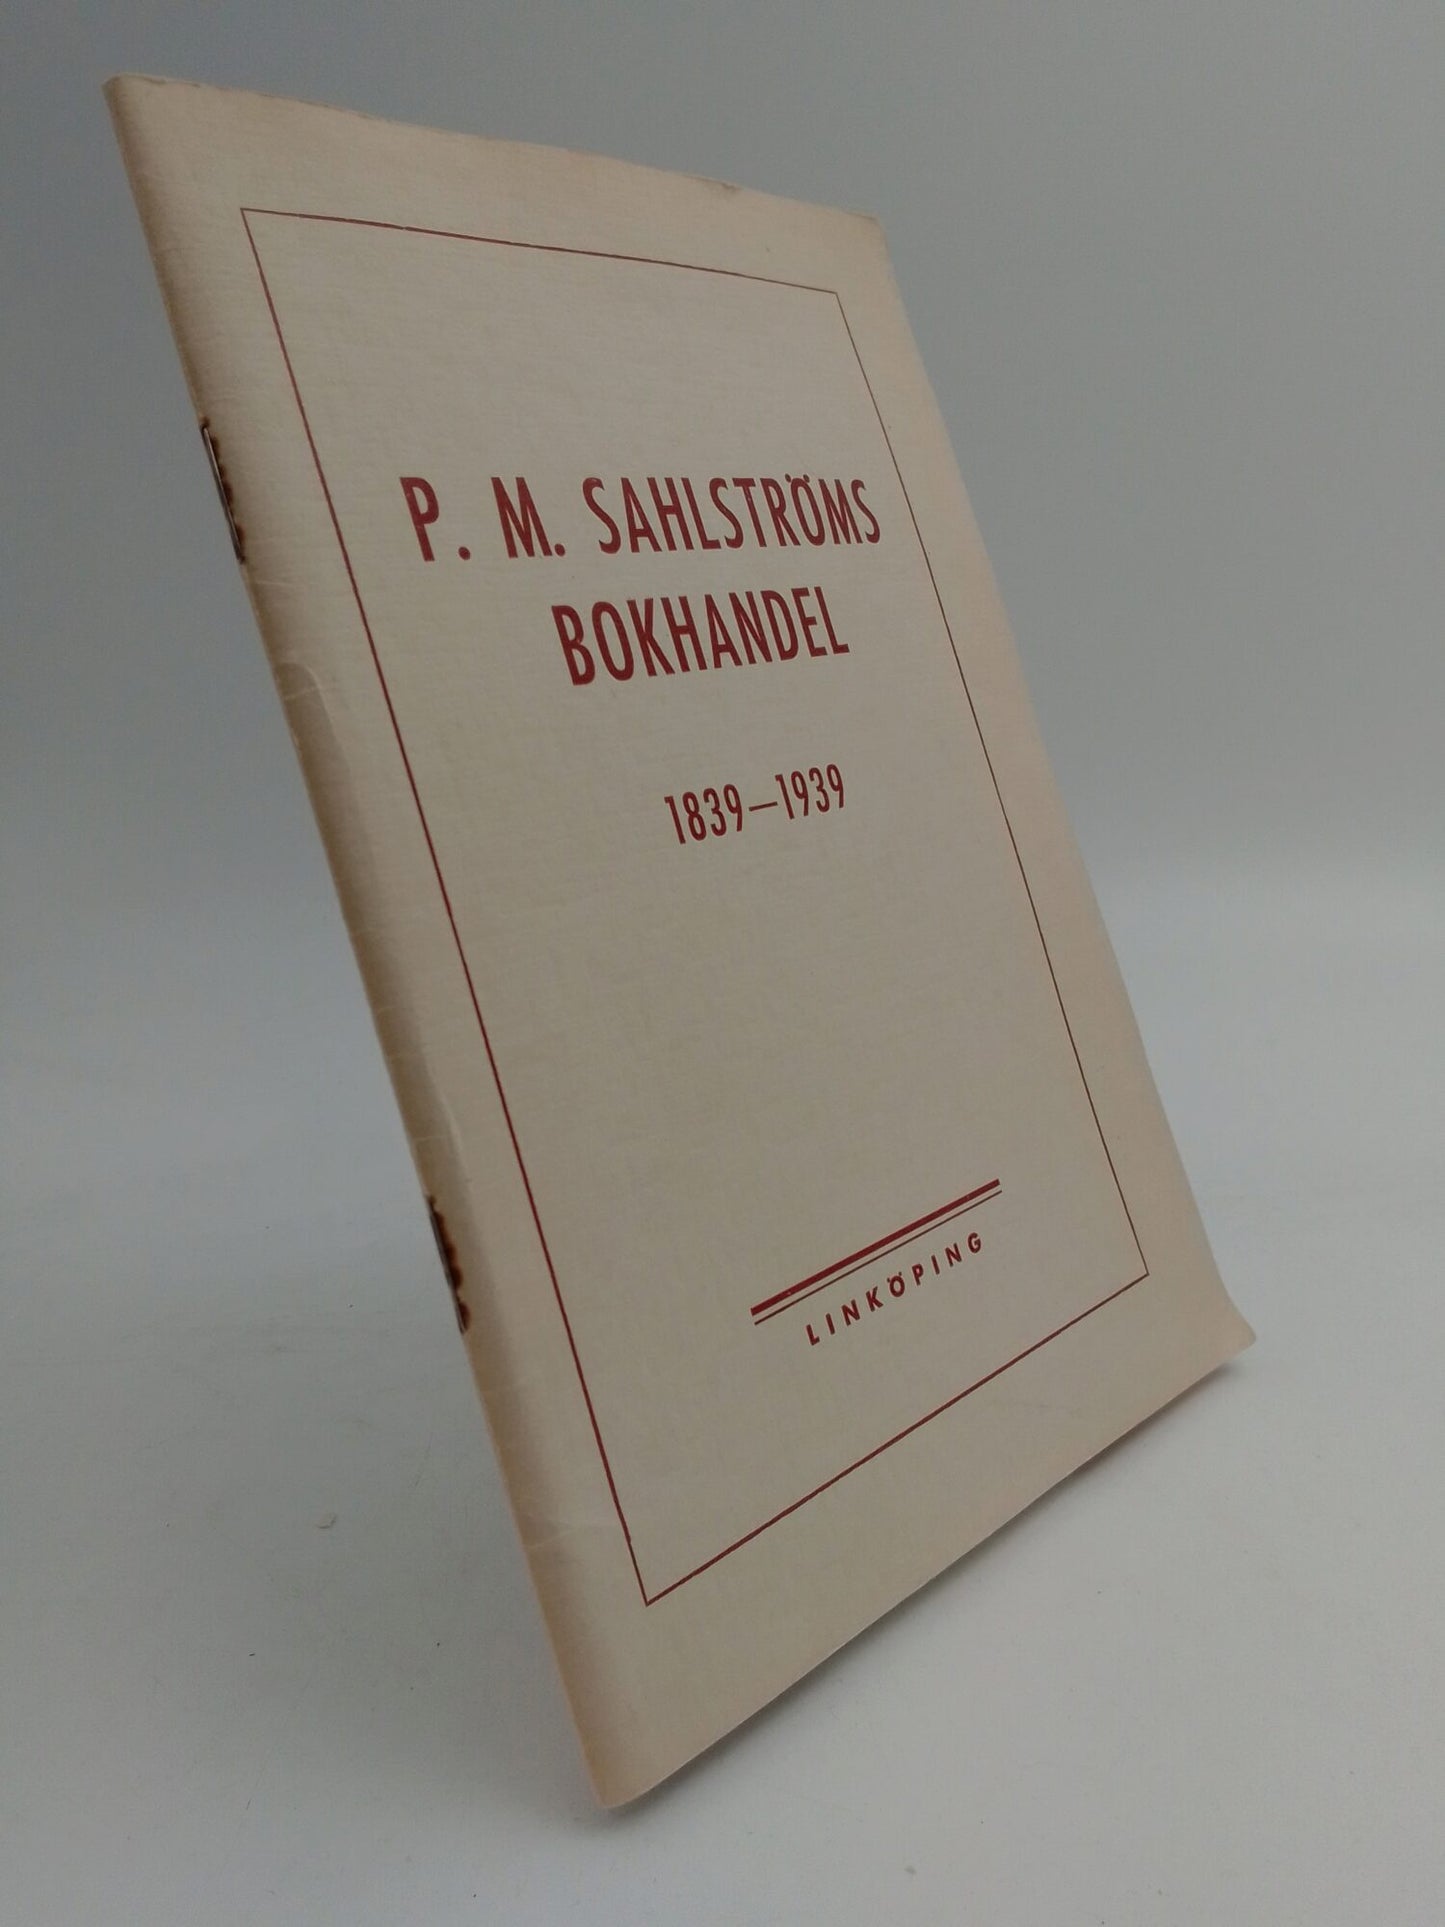 Hanzén, John | P. M. Sahlströms bokhandel 1839-1939 : Minnesskrift